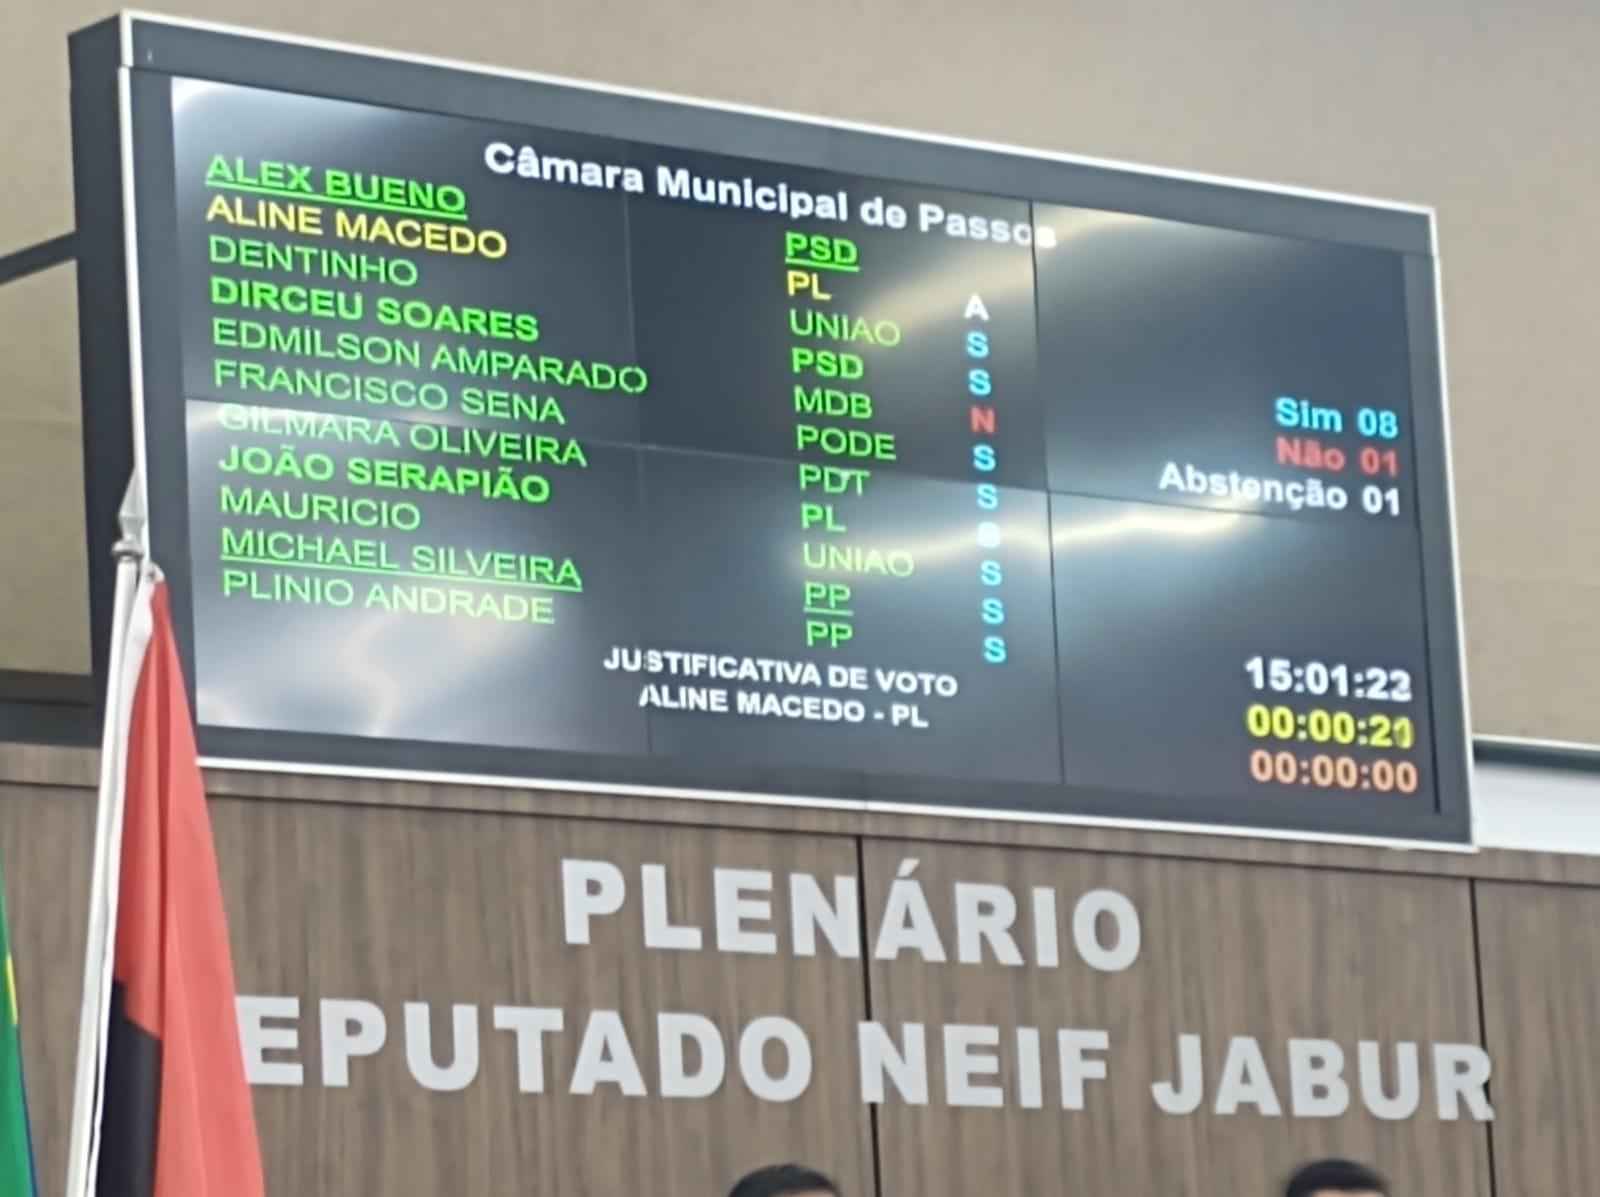 Câmara de Passos cria cargos de comissão com salários de até R$ 10,3 mil - Francisco Sena